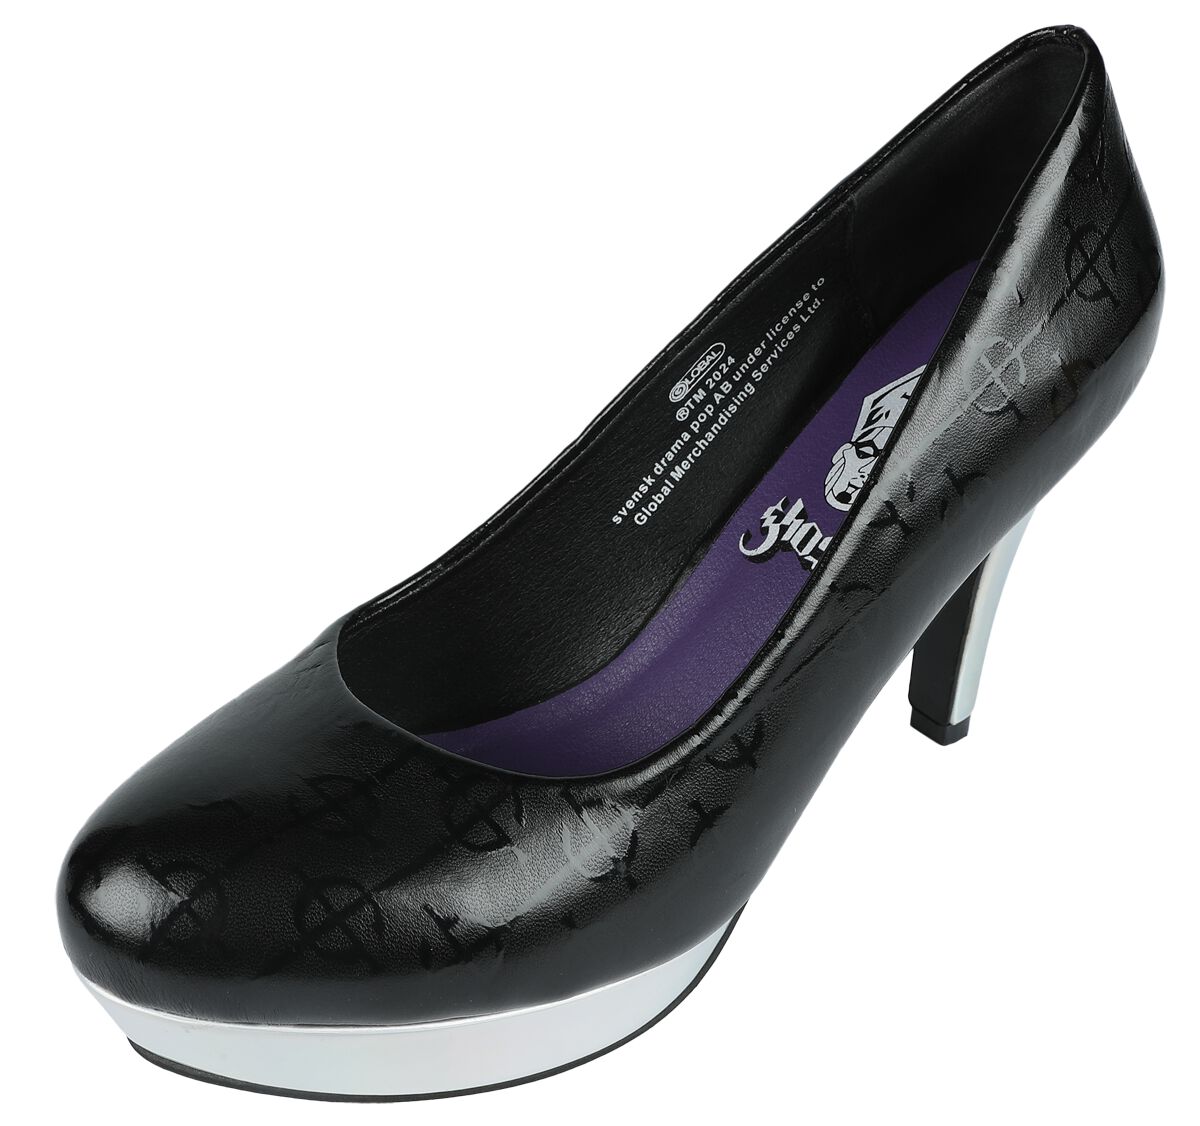 Ghost EMP Signature Collection High Heel schwarz silberfarben in EU37